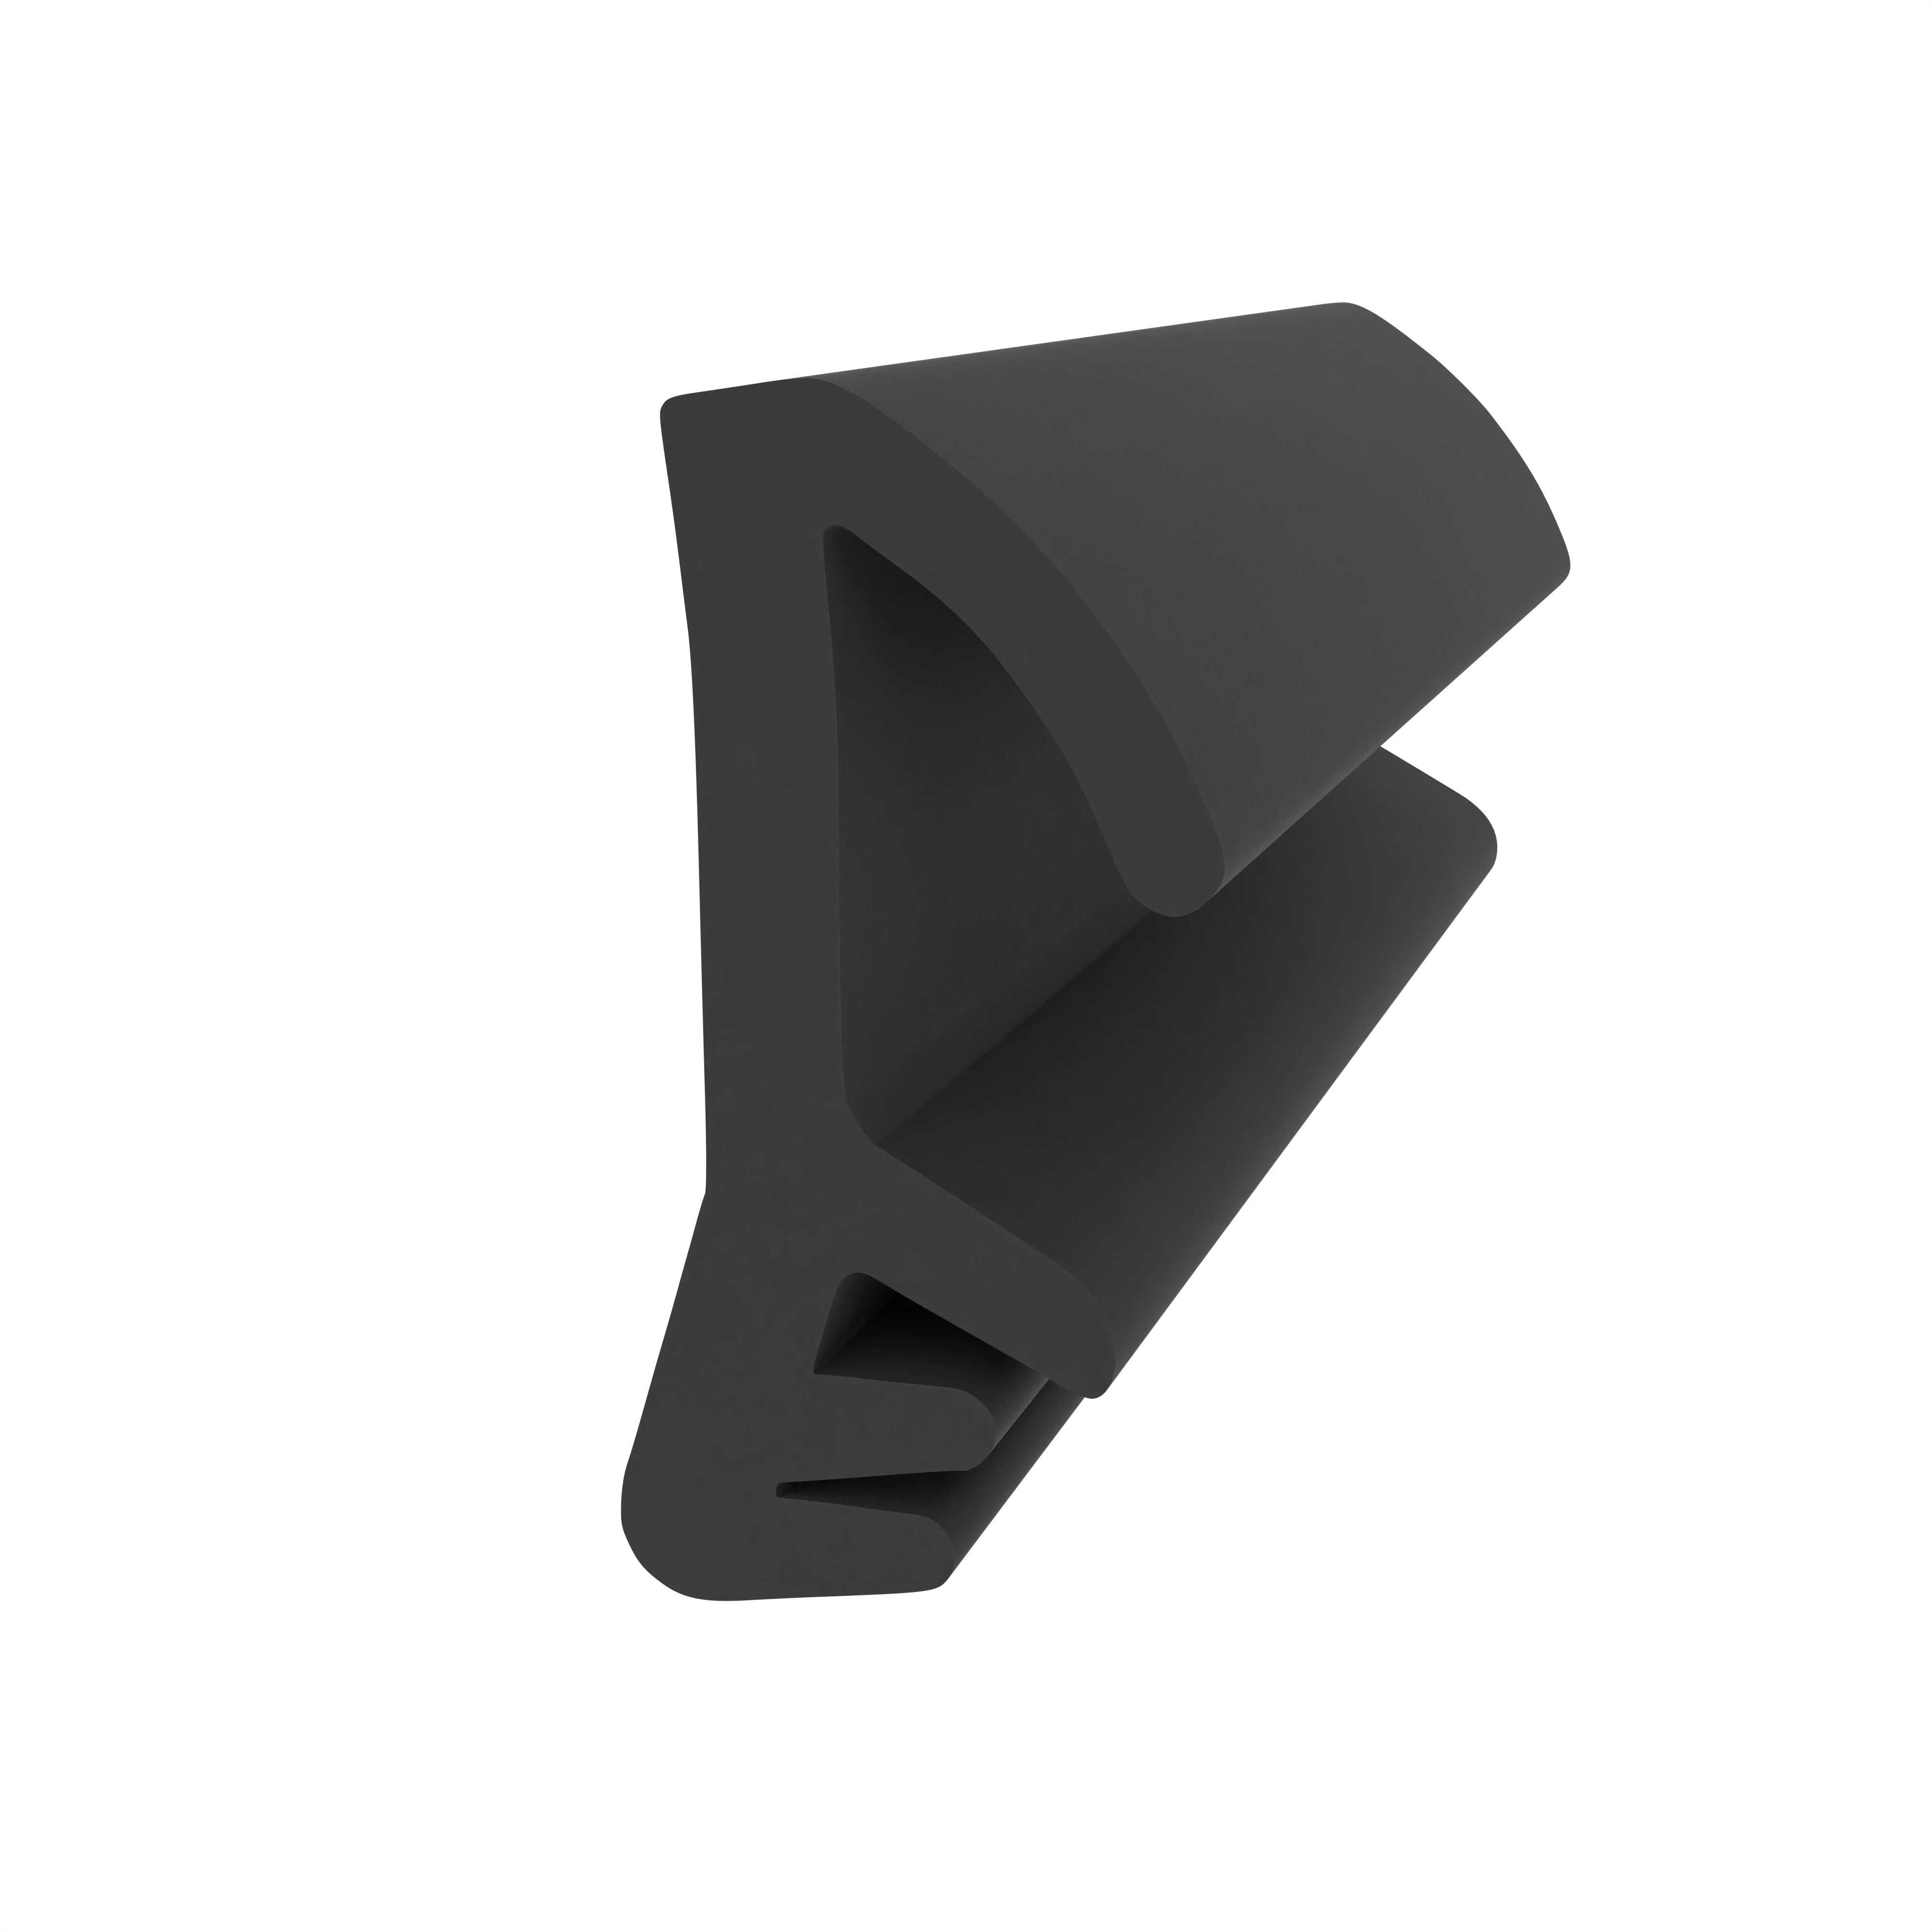 Flügelfalzdichtung für TECTUS Türkonstruktionen | 15 mm Falzhöhe | Farbe: schwarz